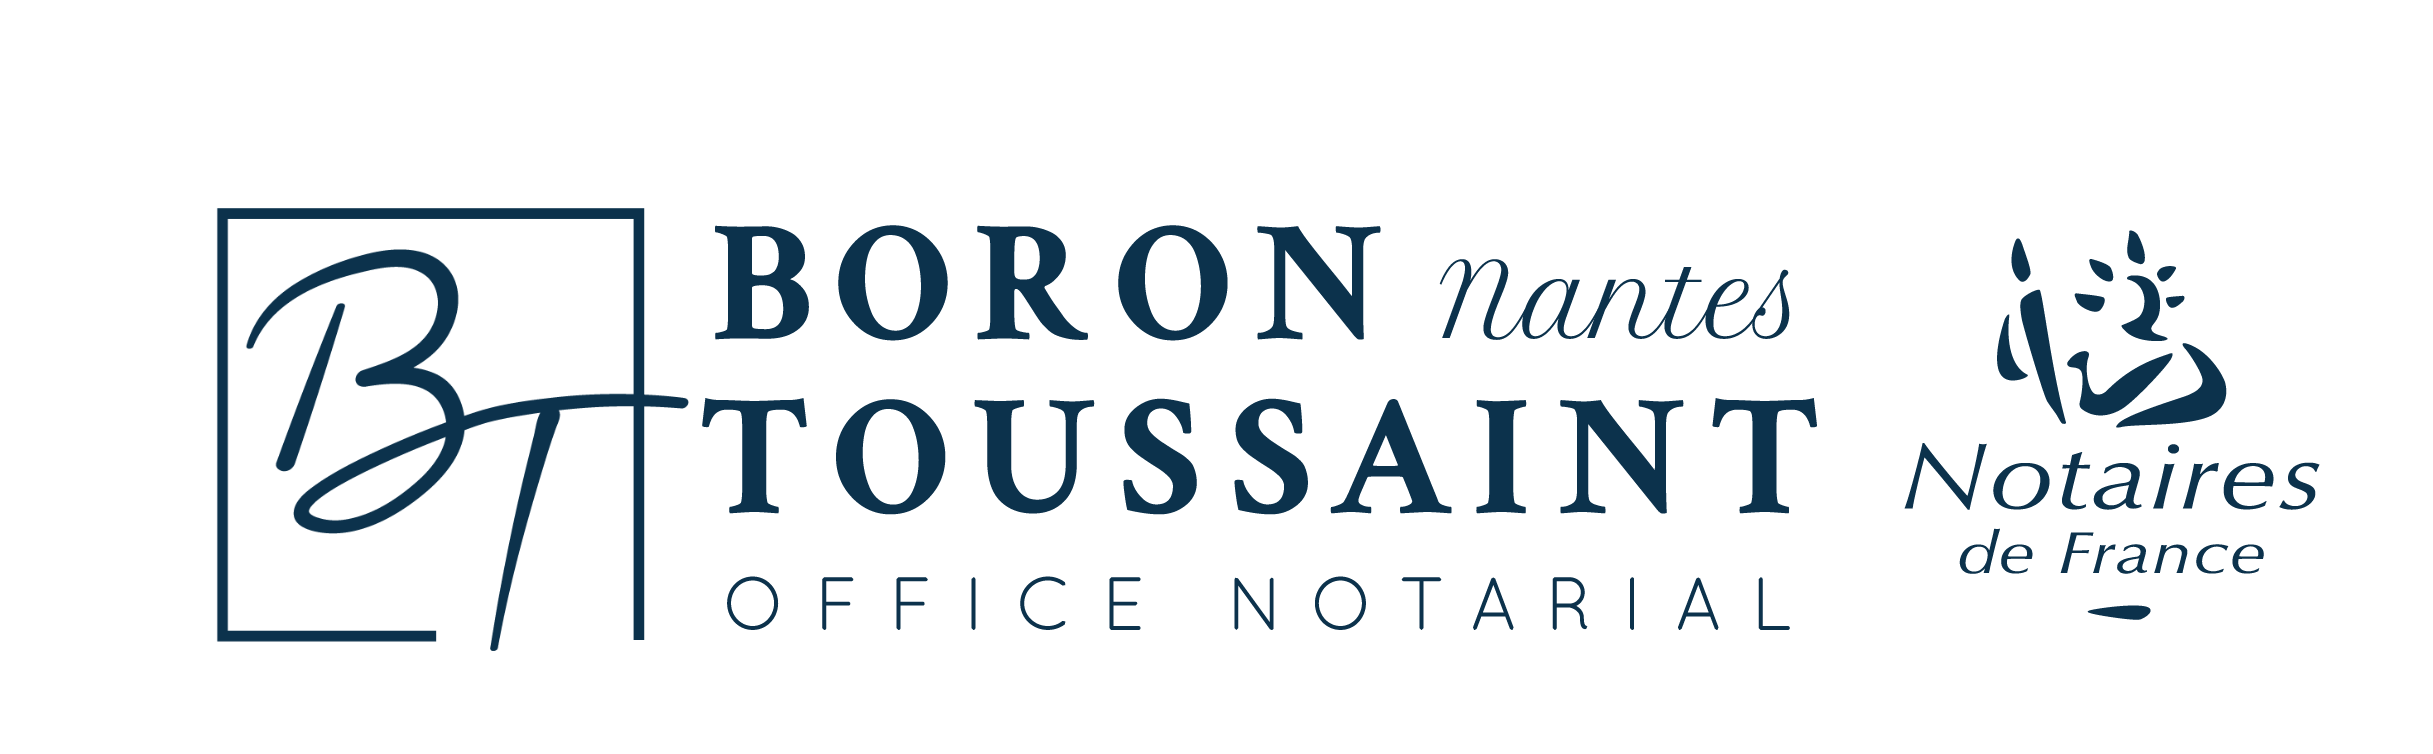 Etude Boron-Toussaint - Notaires à Nantes